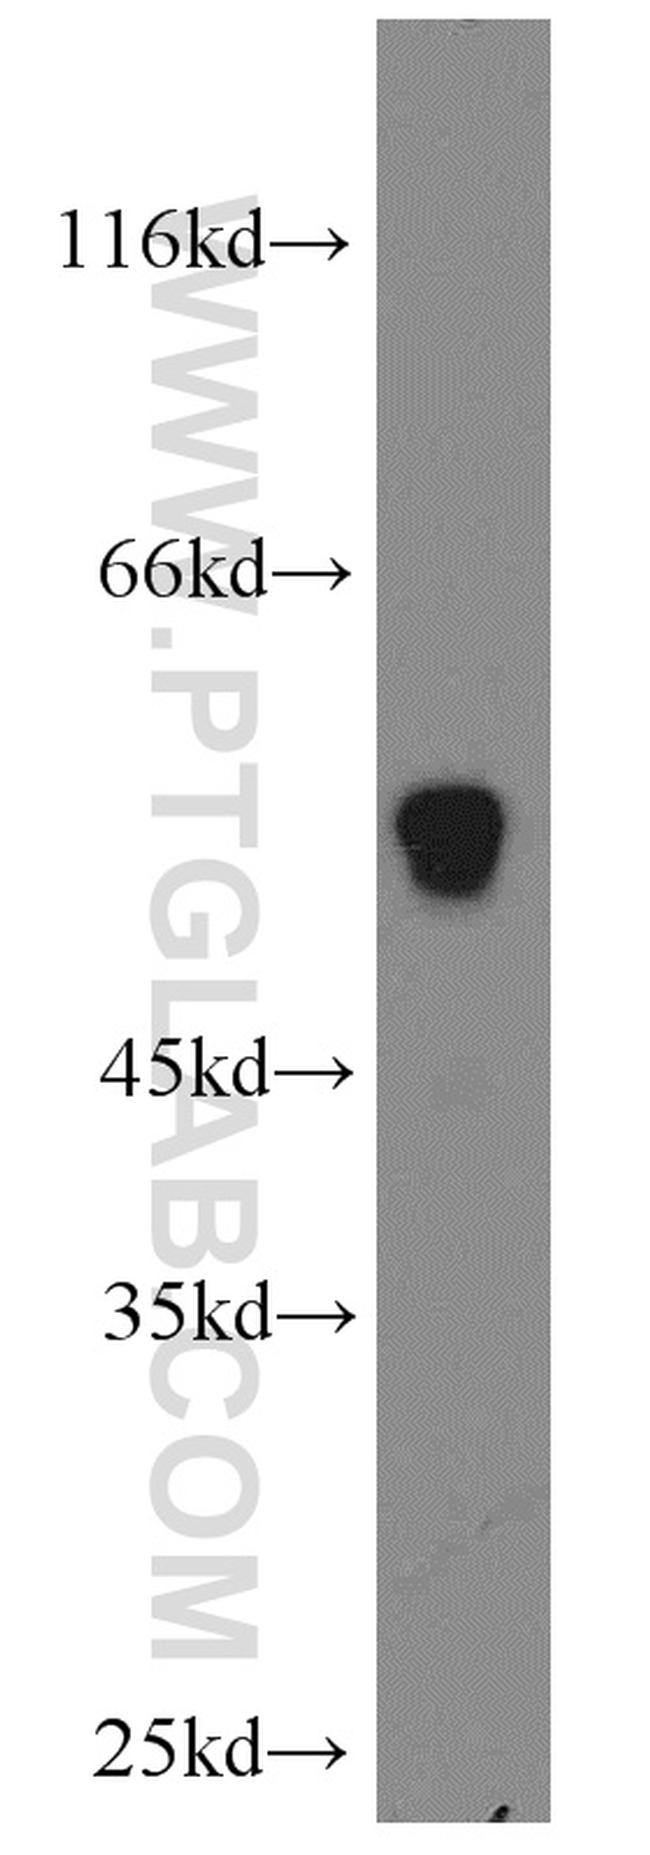 UGCG Antibody in Western Blot (WB)